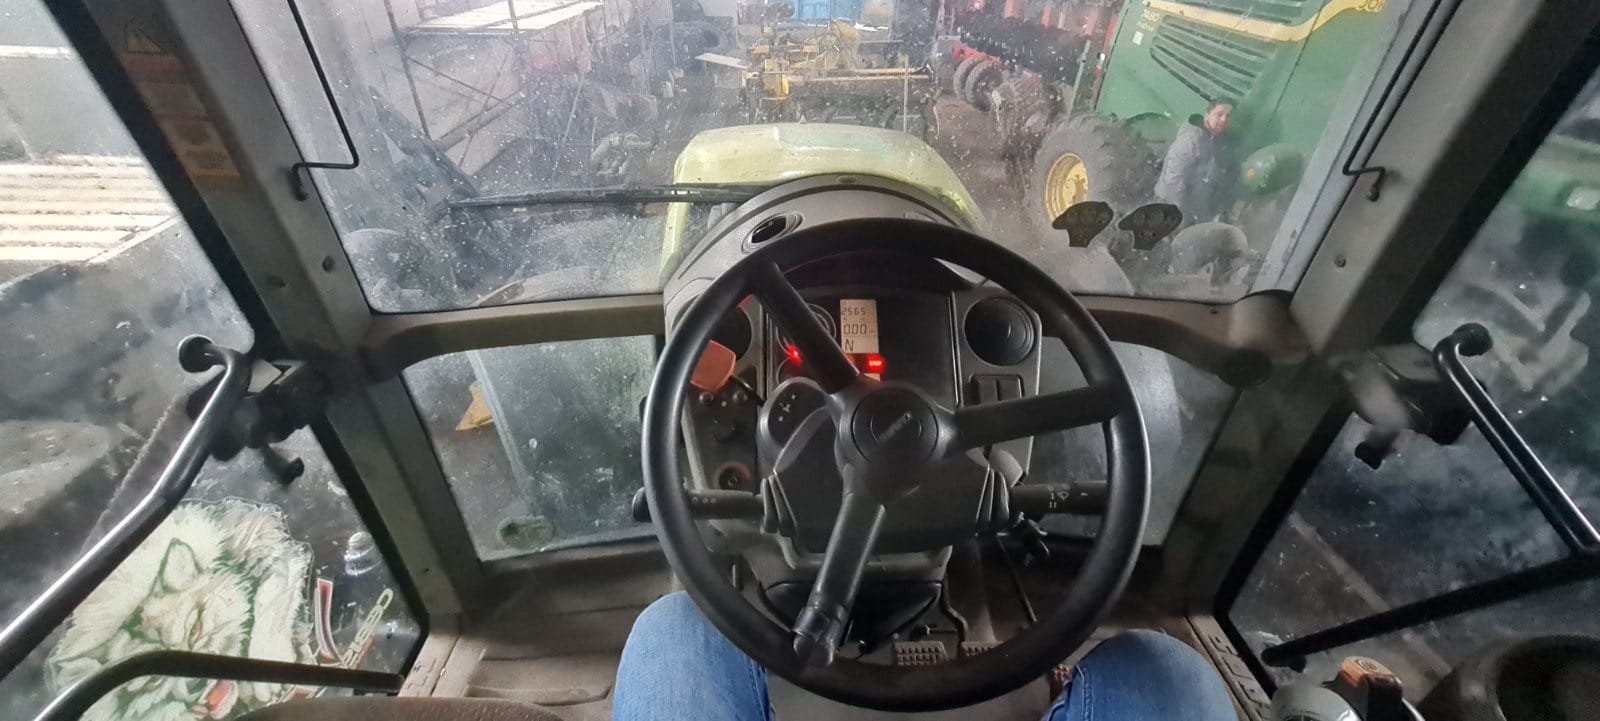 Трактор колёсный, Axion 850, CLAAS